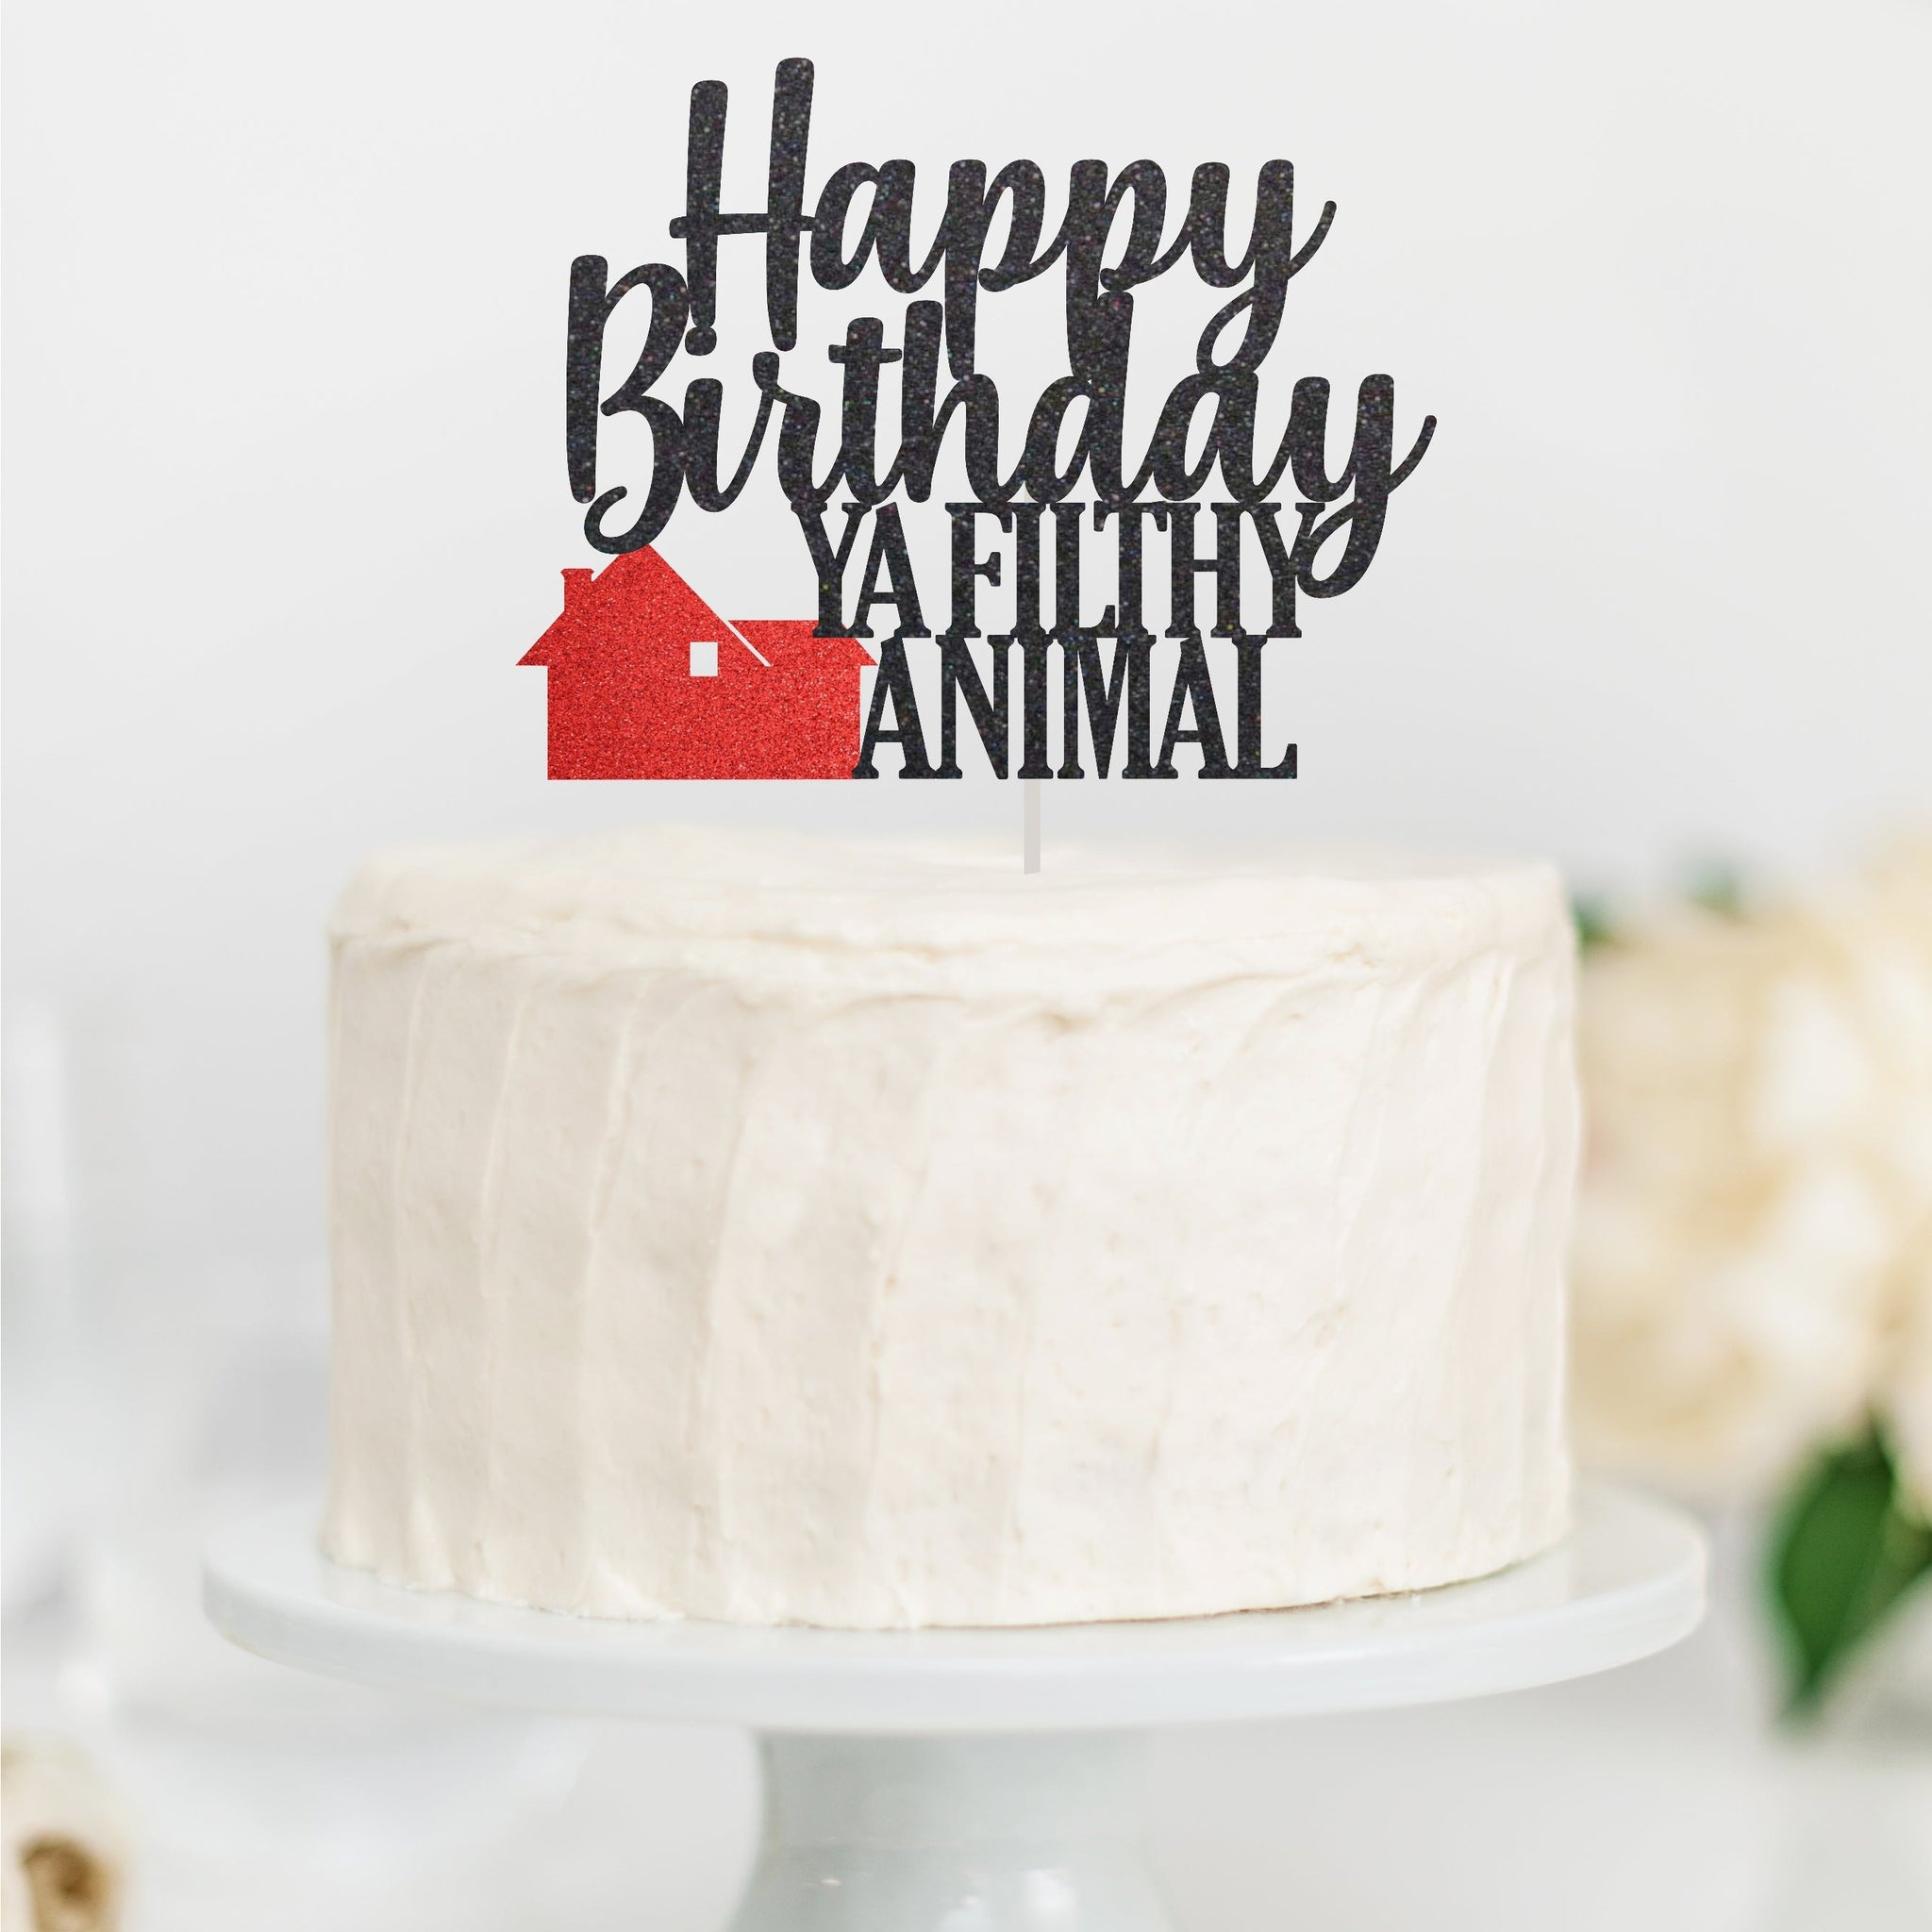 happy birthday ya filthy animal cake topper